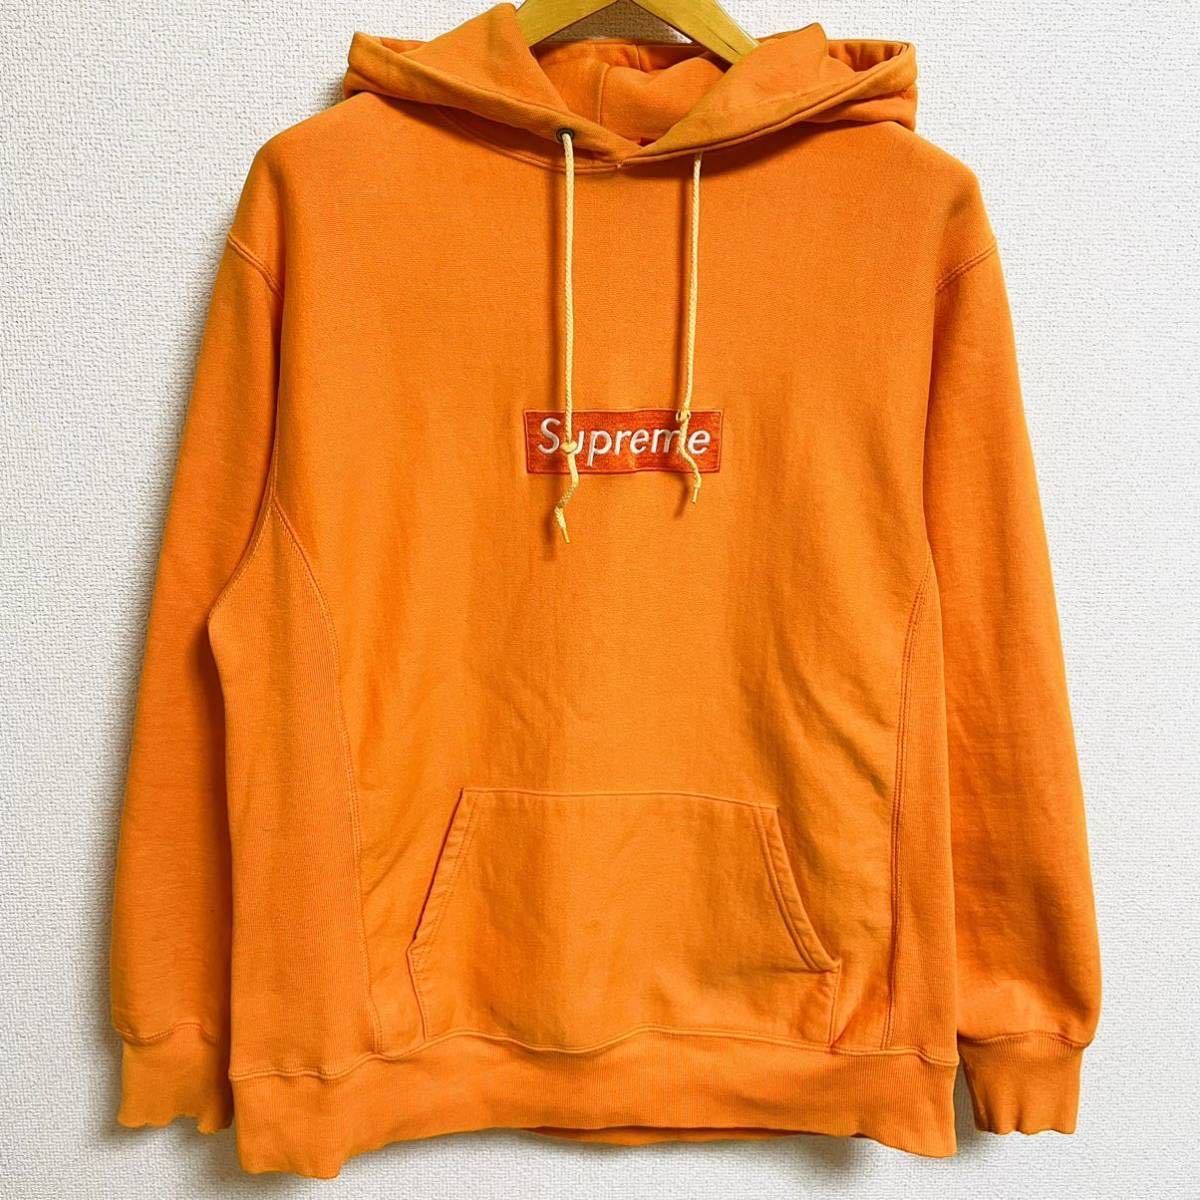 激レア Supreme Box Logo Pullover Hooded Sweatshirt Orange L 2000年 オレンジ ボックスロゴ プルオーバー スウェット 初期 OLD Vintage